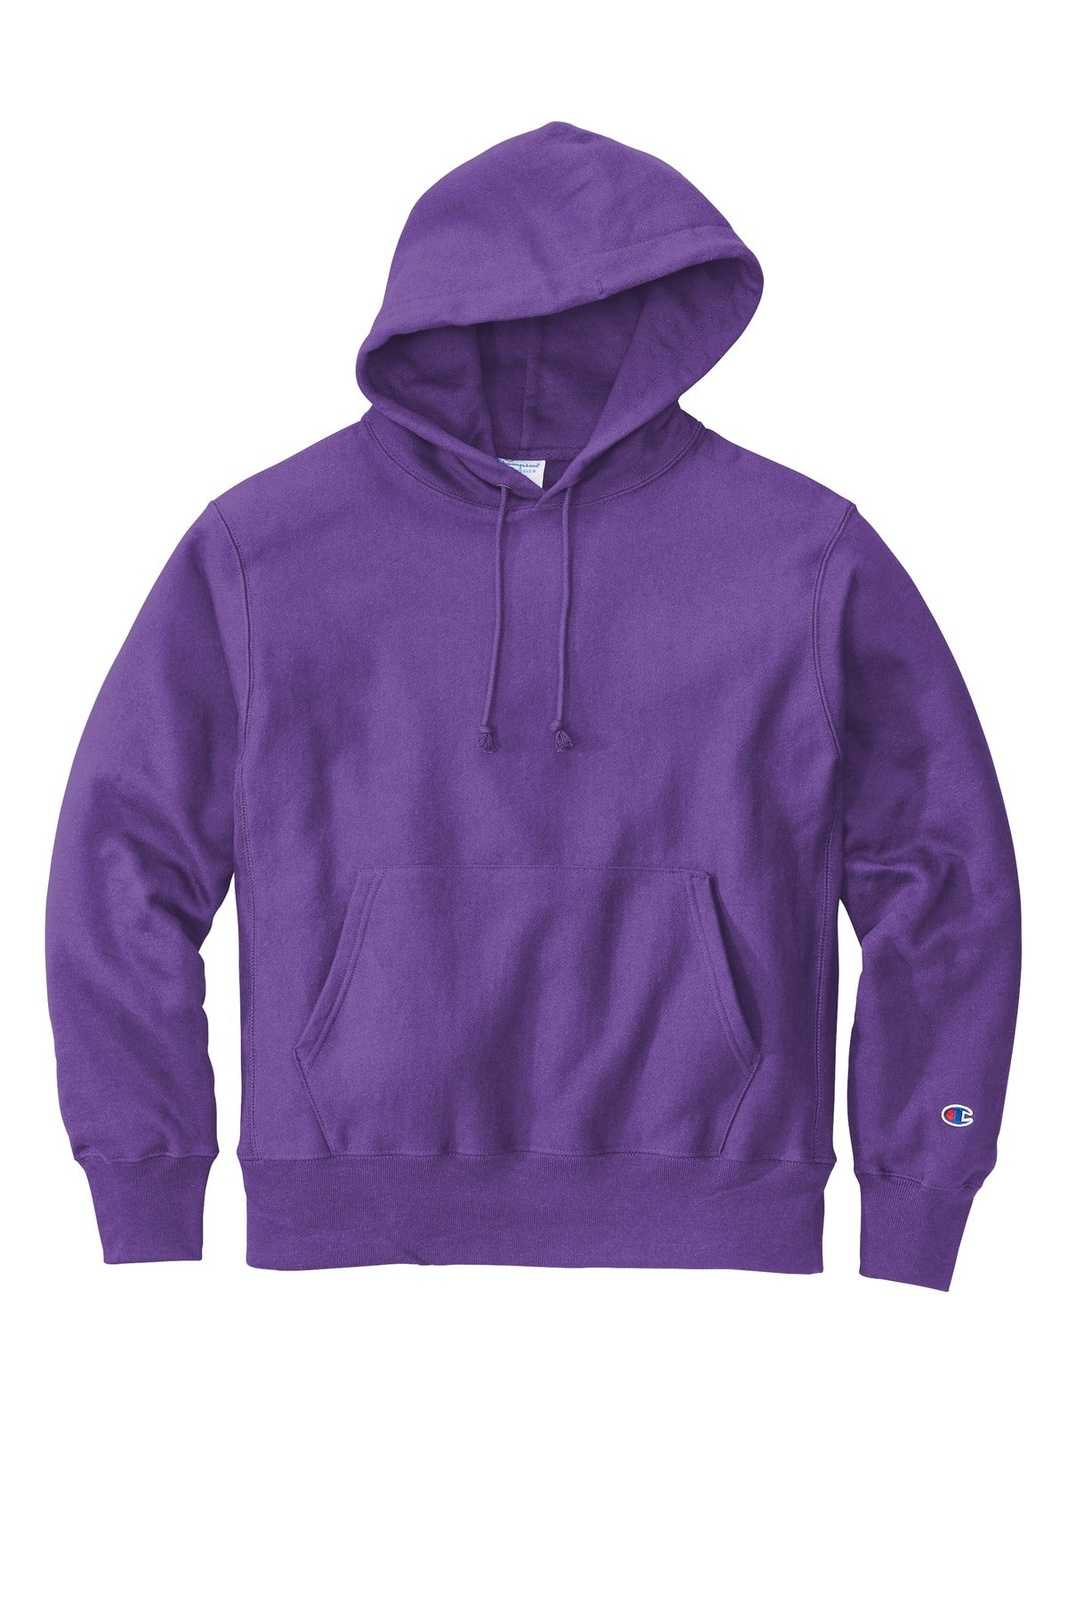 Champion S101 Reverse Weave Hooded Sweatshirt - Purple - HIT a Double - 1